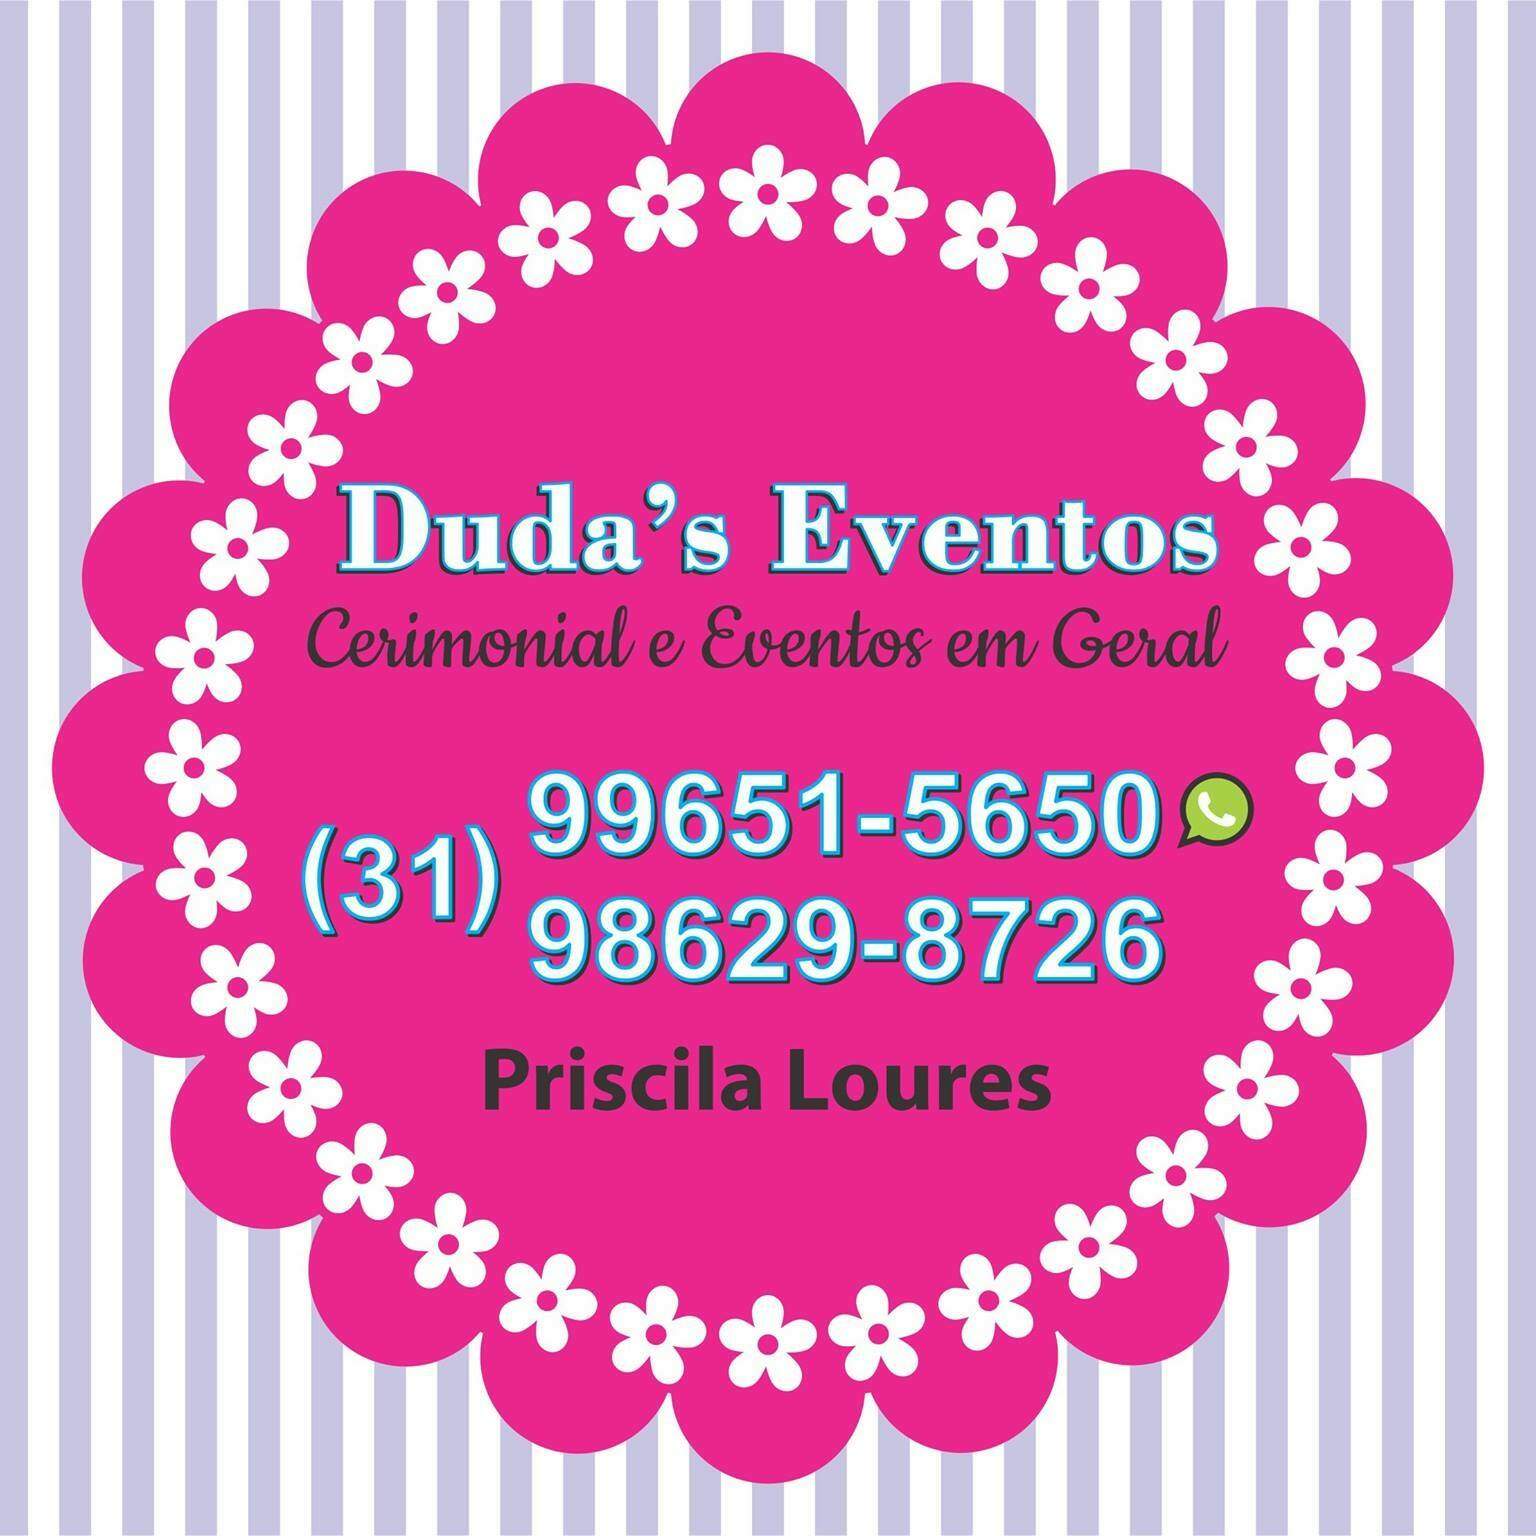 Duda's Eventos